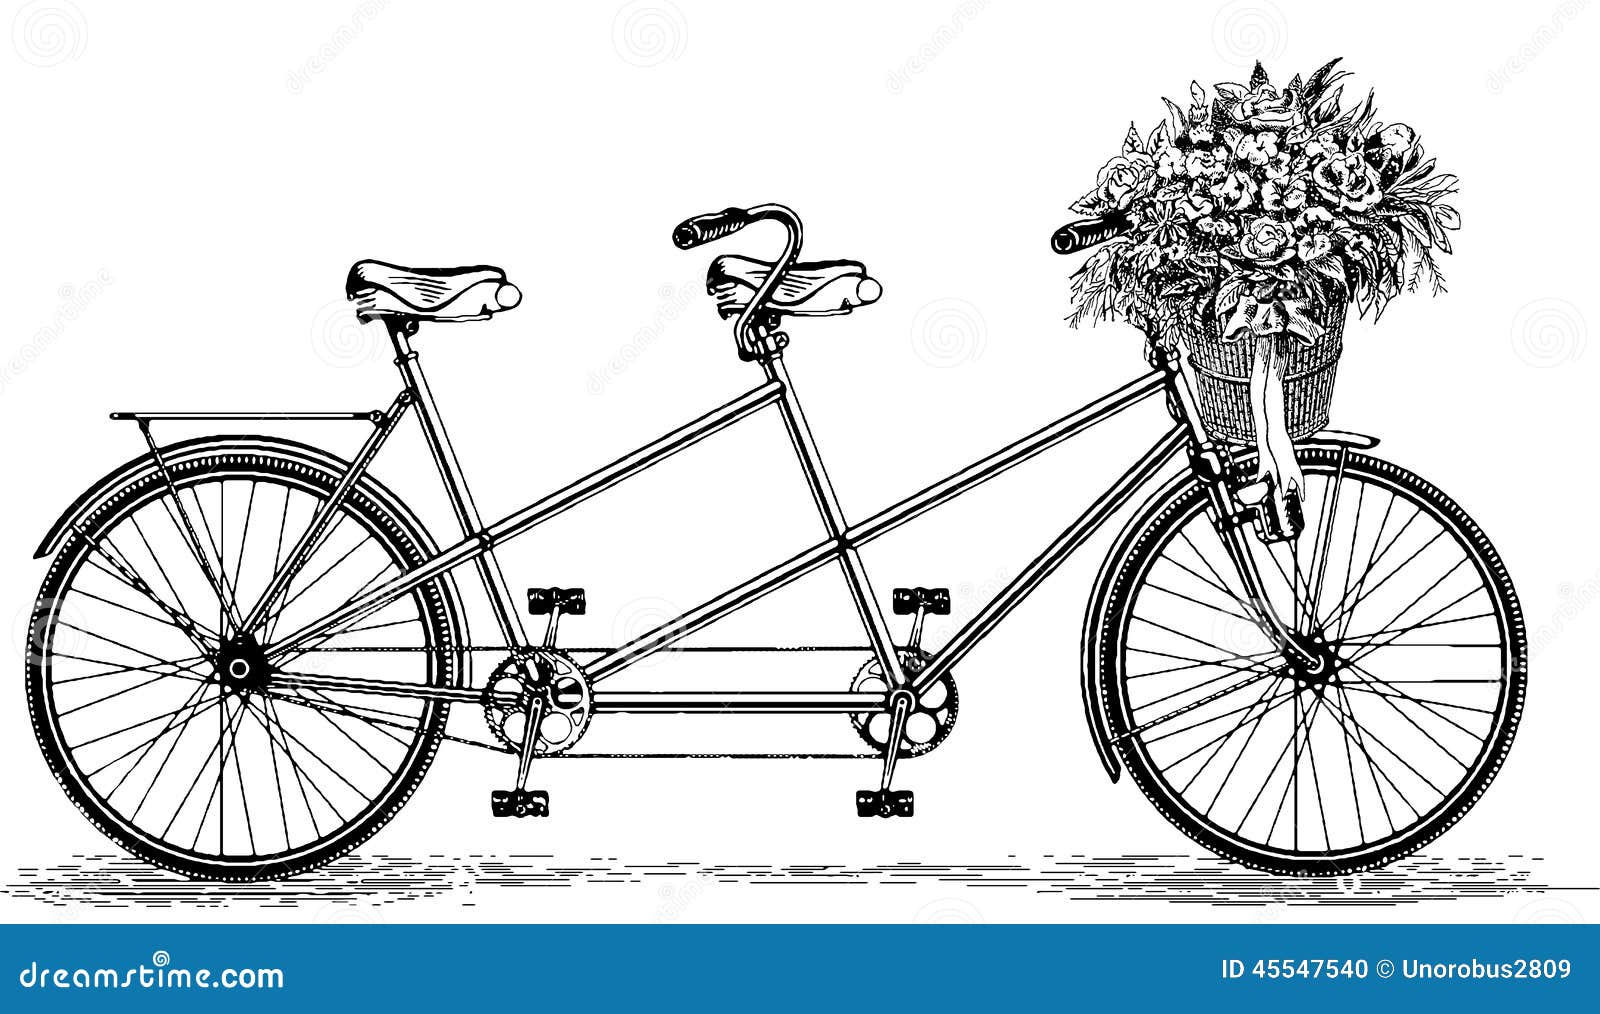 vintage tandem bicycle